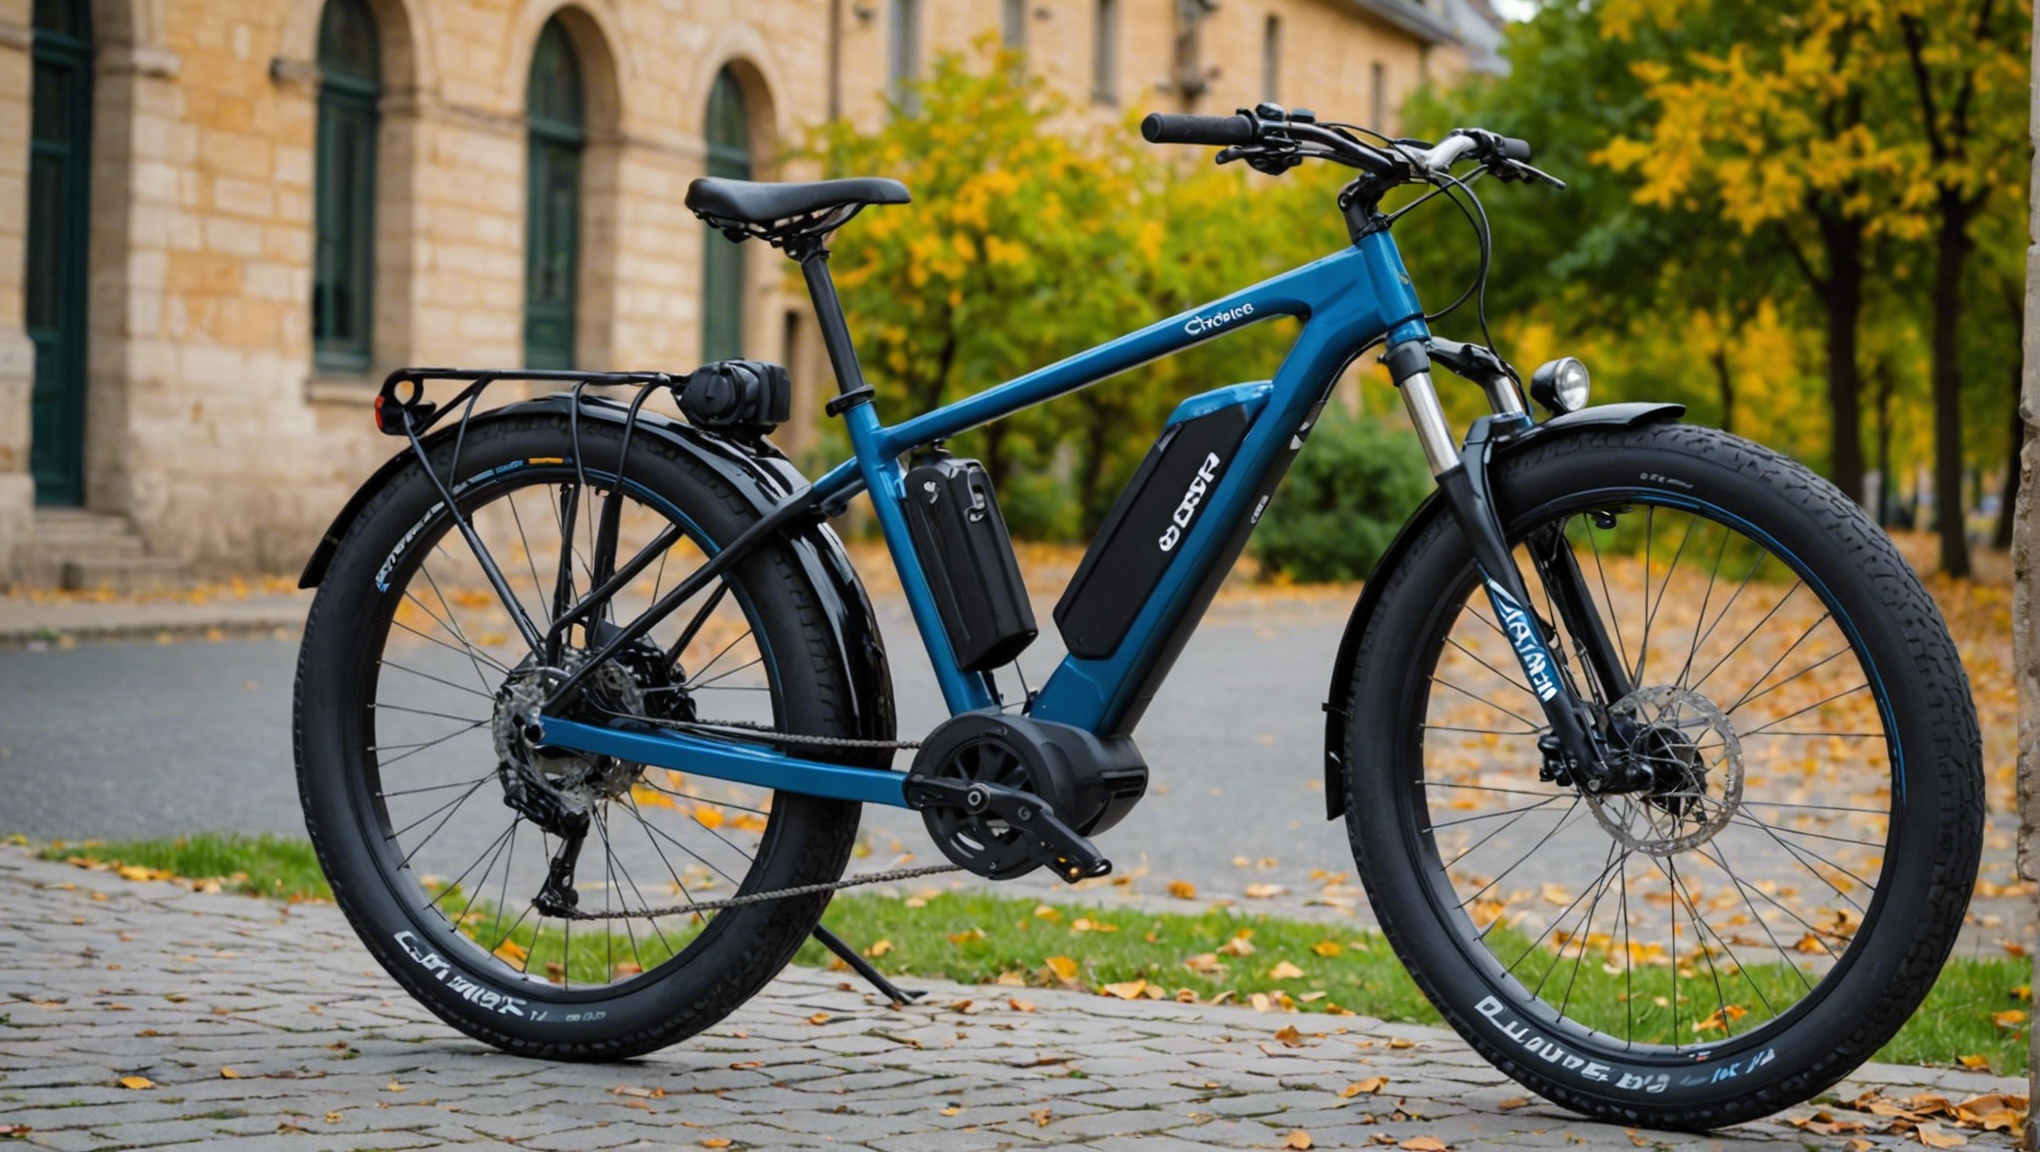 découvrez les avantages et inconvénients des batteries 36v et 48v pour les vélos électriques et faites le bon choix pour vos besoins de mobilité urbaine ou de loisirs.